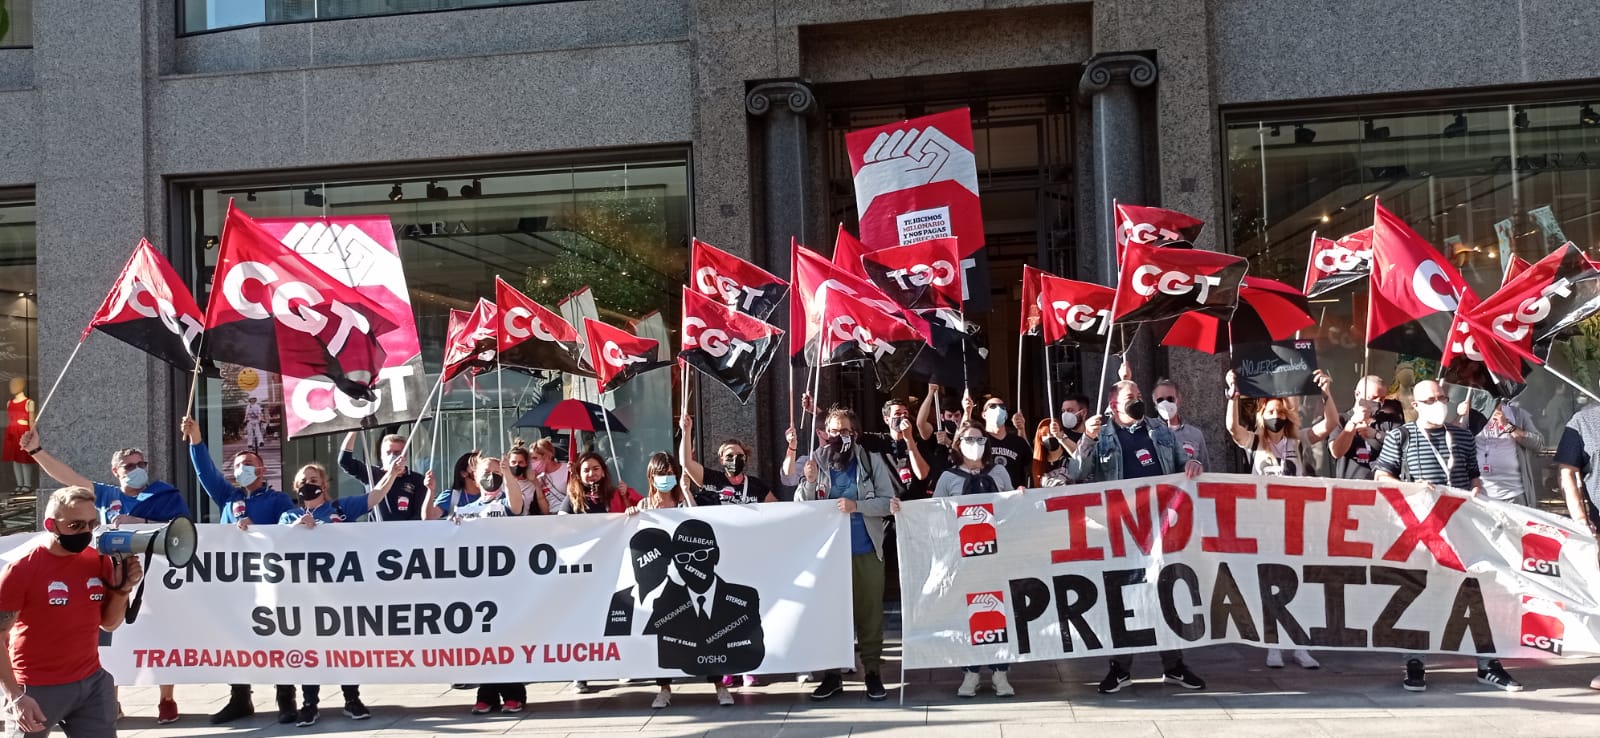 Las protestas de CGT por un cierre en Inditex.